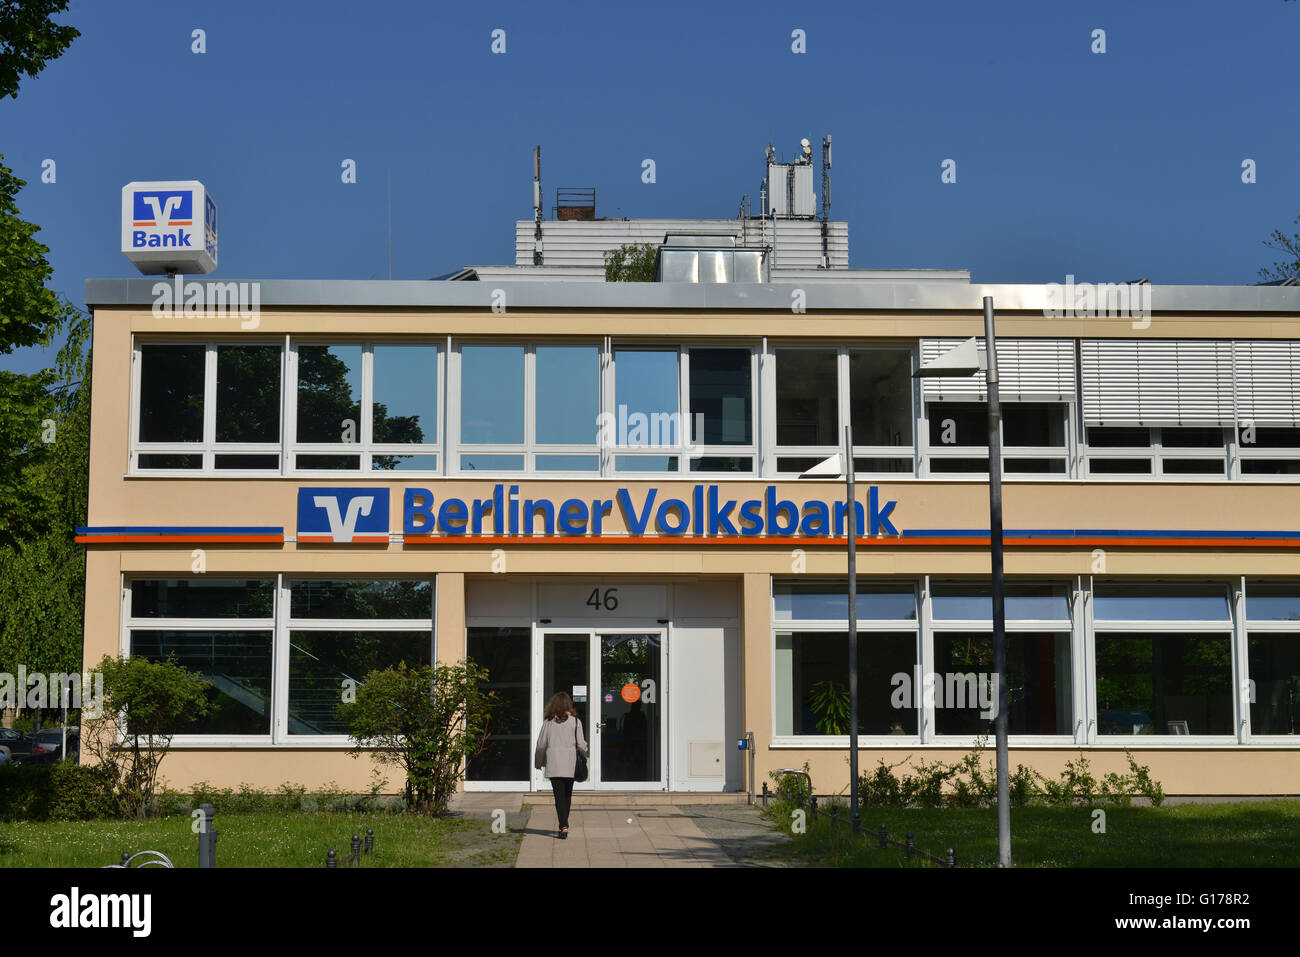 Filiale Volksbank, Schlossstrasse, Steglitz Berlino, Deutschland / Berliner Volksbank Foto Stock